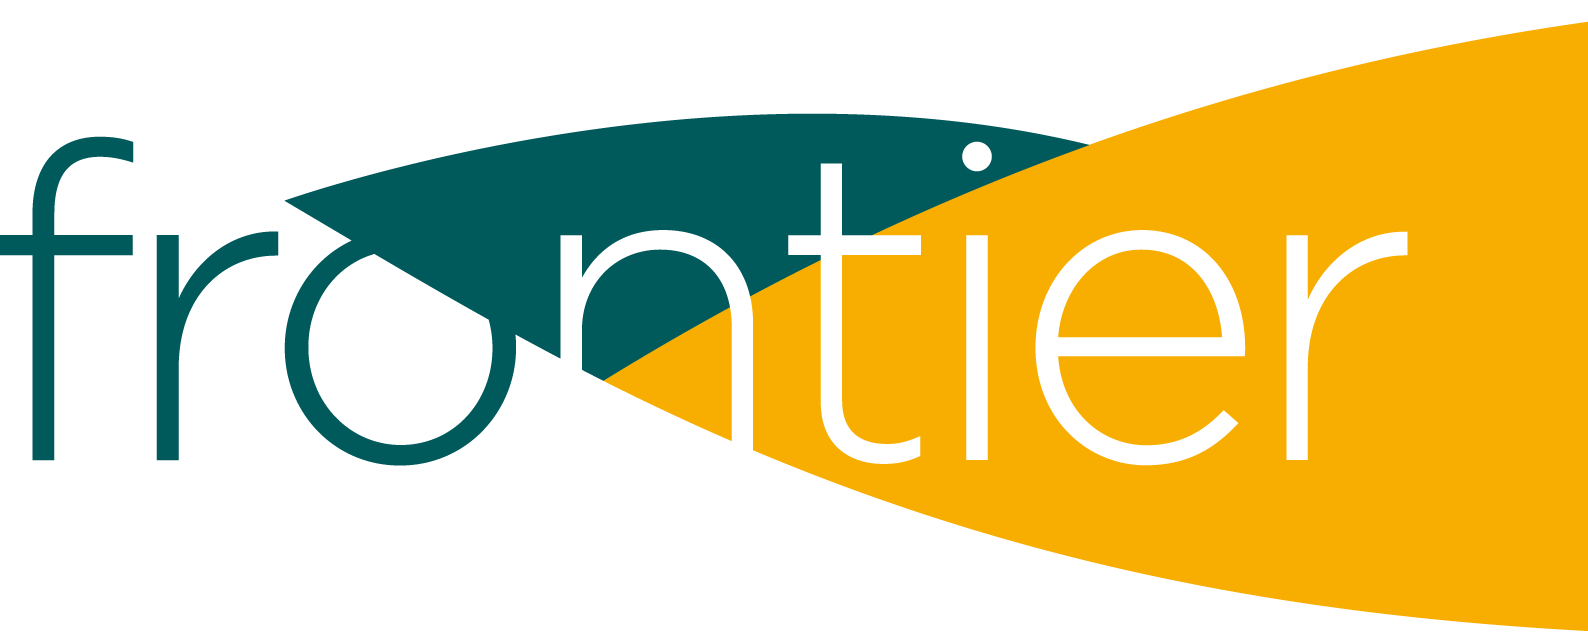 frontier logo no bleed